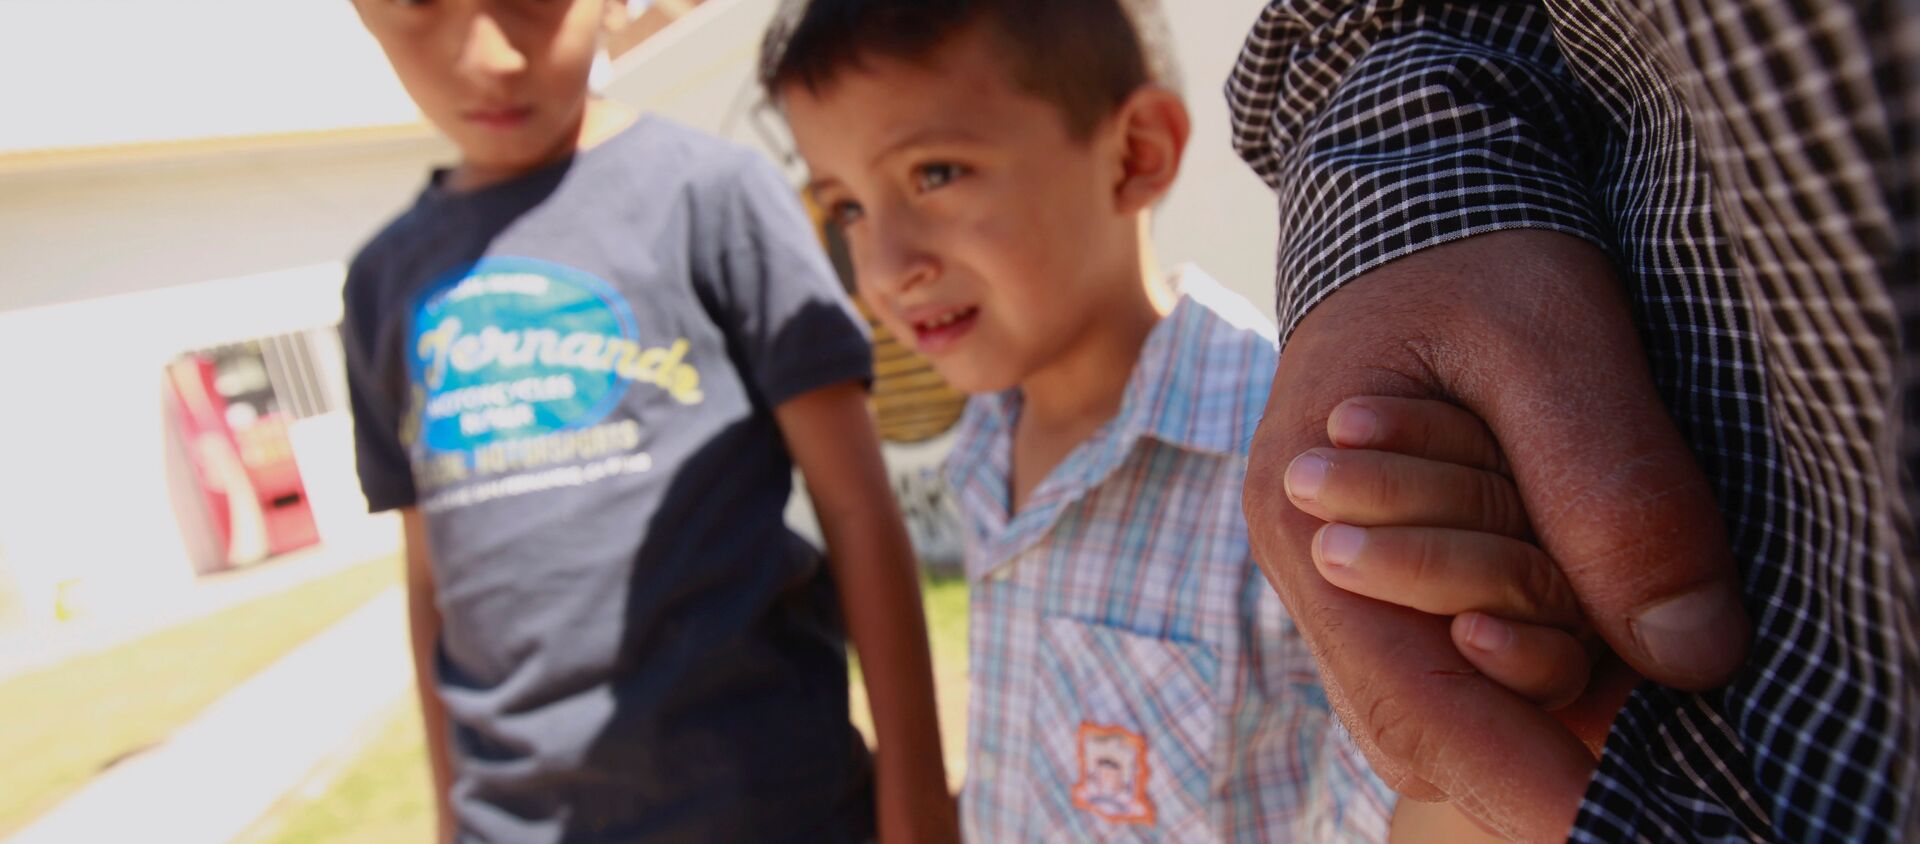 ABD'deki göçmen çocukları ayırma politikası nedeniyle Meksika'daki sığınmacı kampında kalan El Salvadorlu göçmen ve çocukları - Sputnik Türkiye, 1920, 05.01.2021